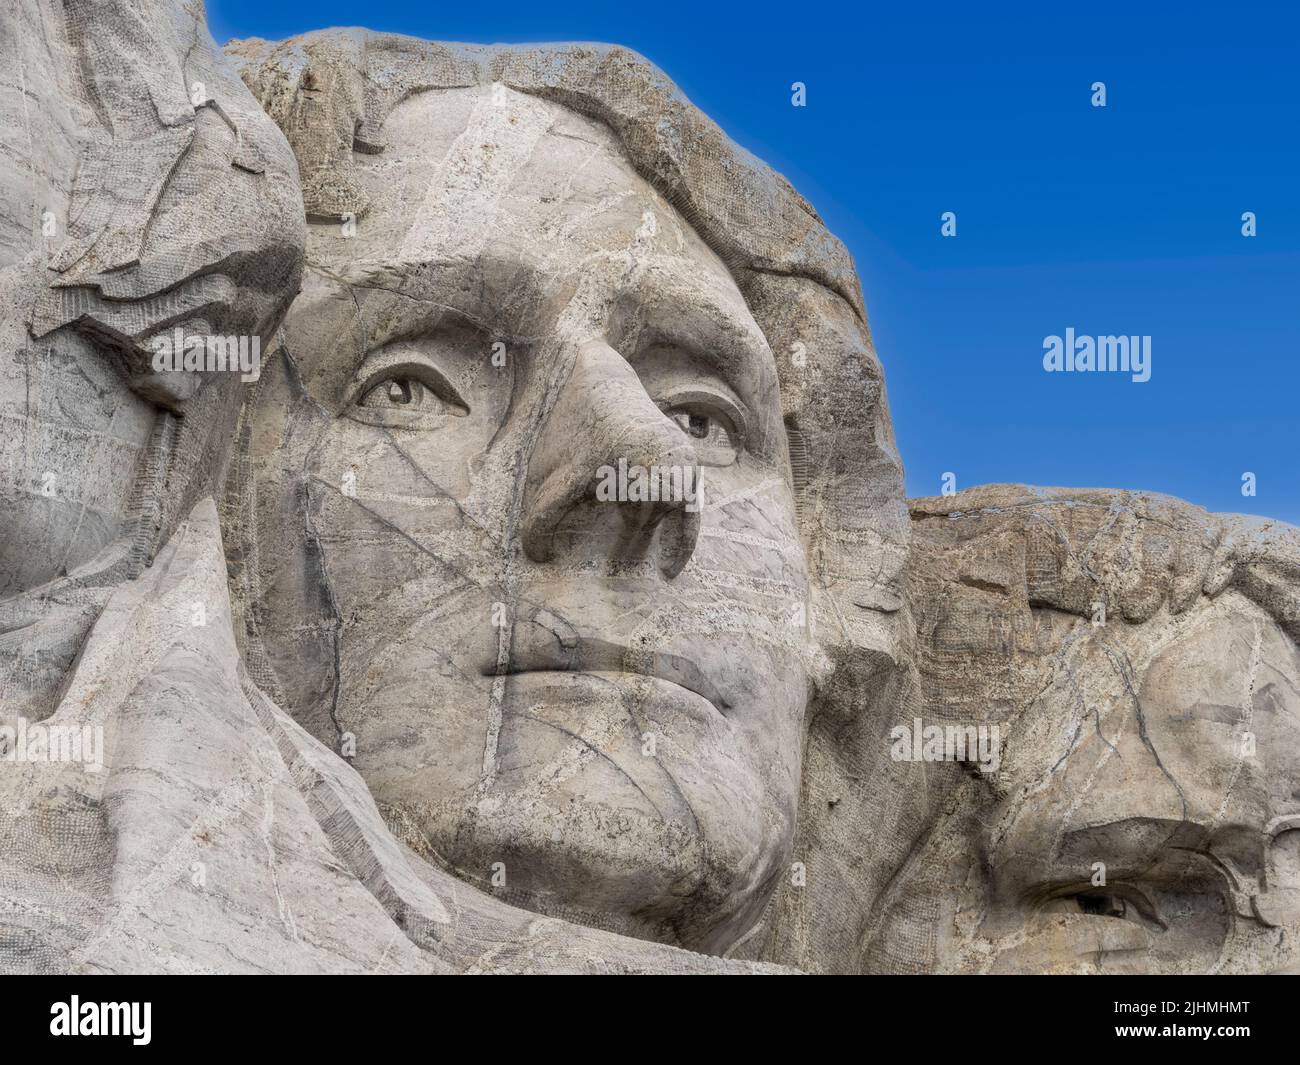 Gros plan de la sculpture de Thomas Jefferson au Mount Rushmore National Memorial, dans les Black Hills du Dakota du Sud, États-Unis Banque D'Images